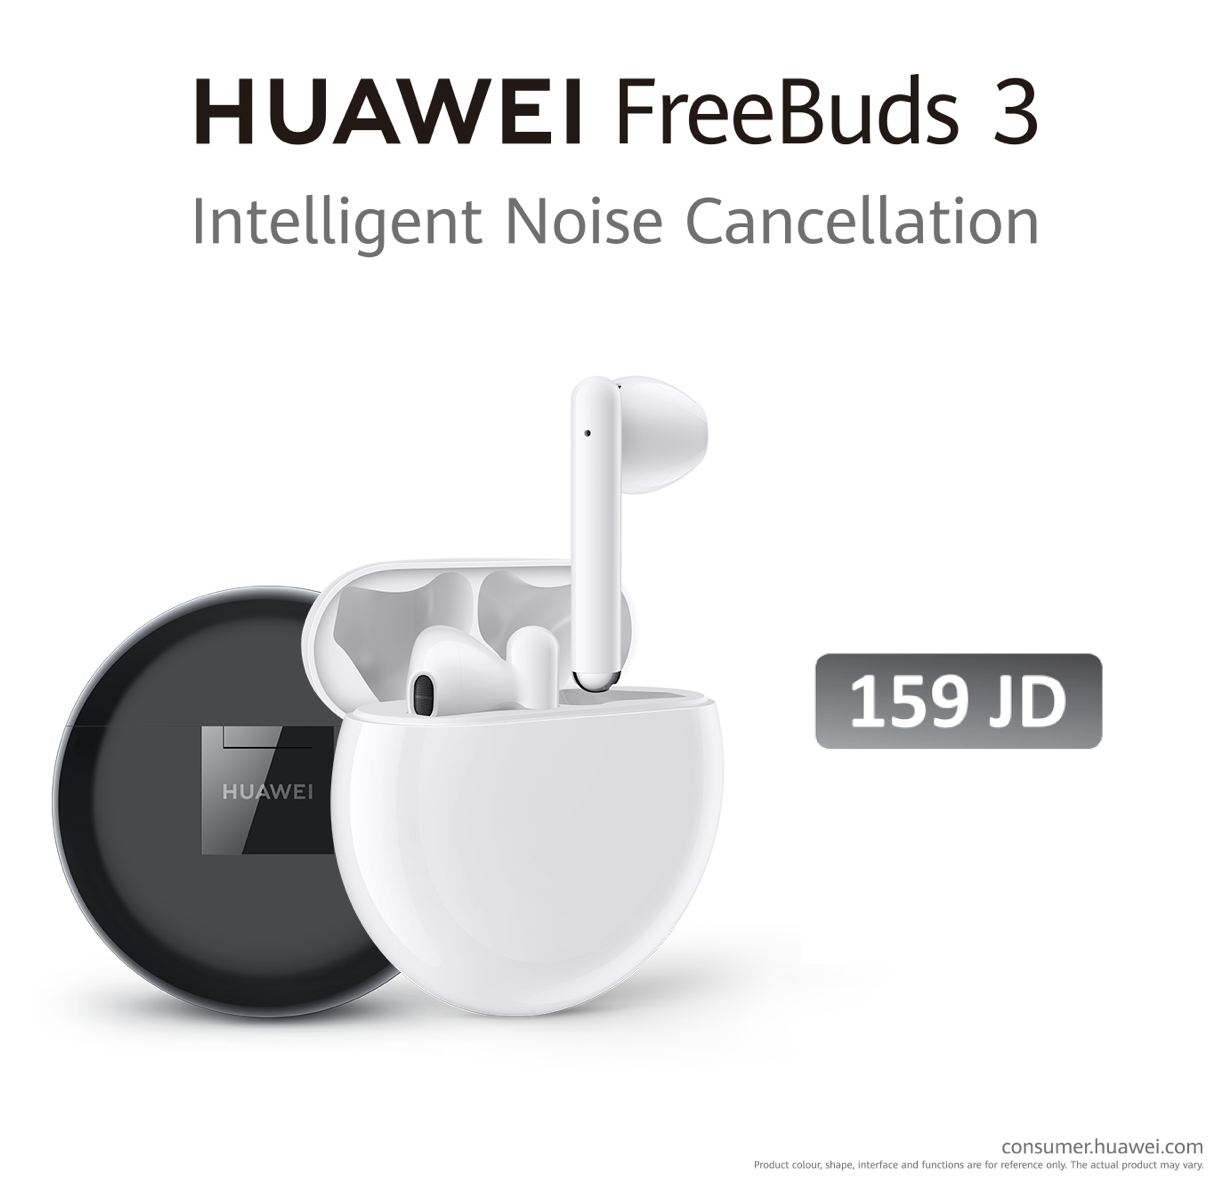 أربع مزايا فريدة تجعل Huawei FreeBuds 3 أكثر من مجرد سماعات! - جريدة الغد